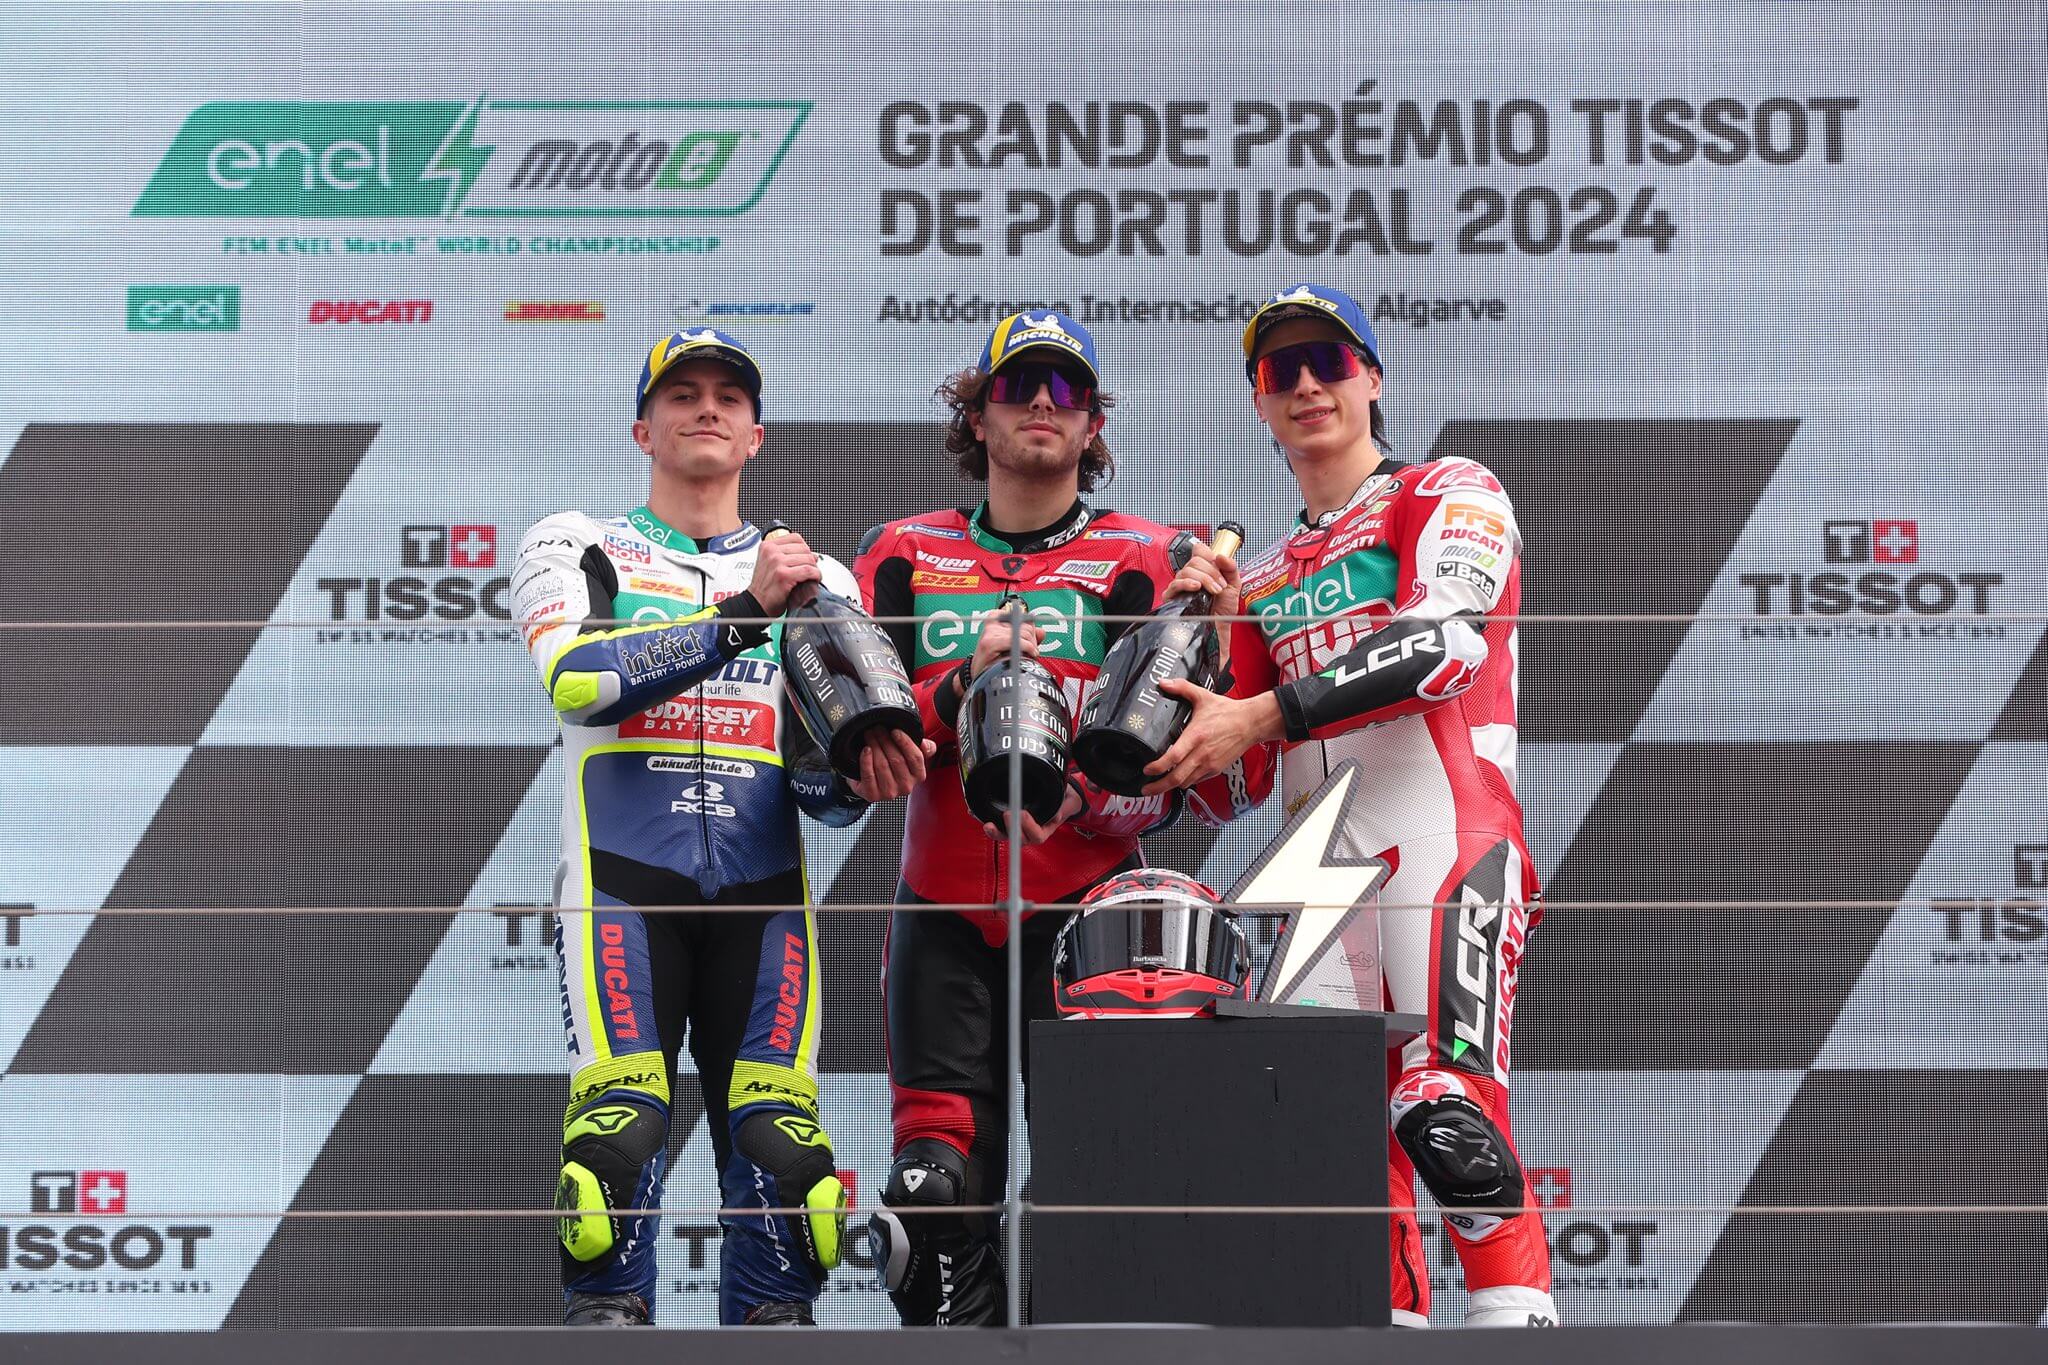 Spinelli-wins-first-motoe-race-in-portimao-2024